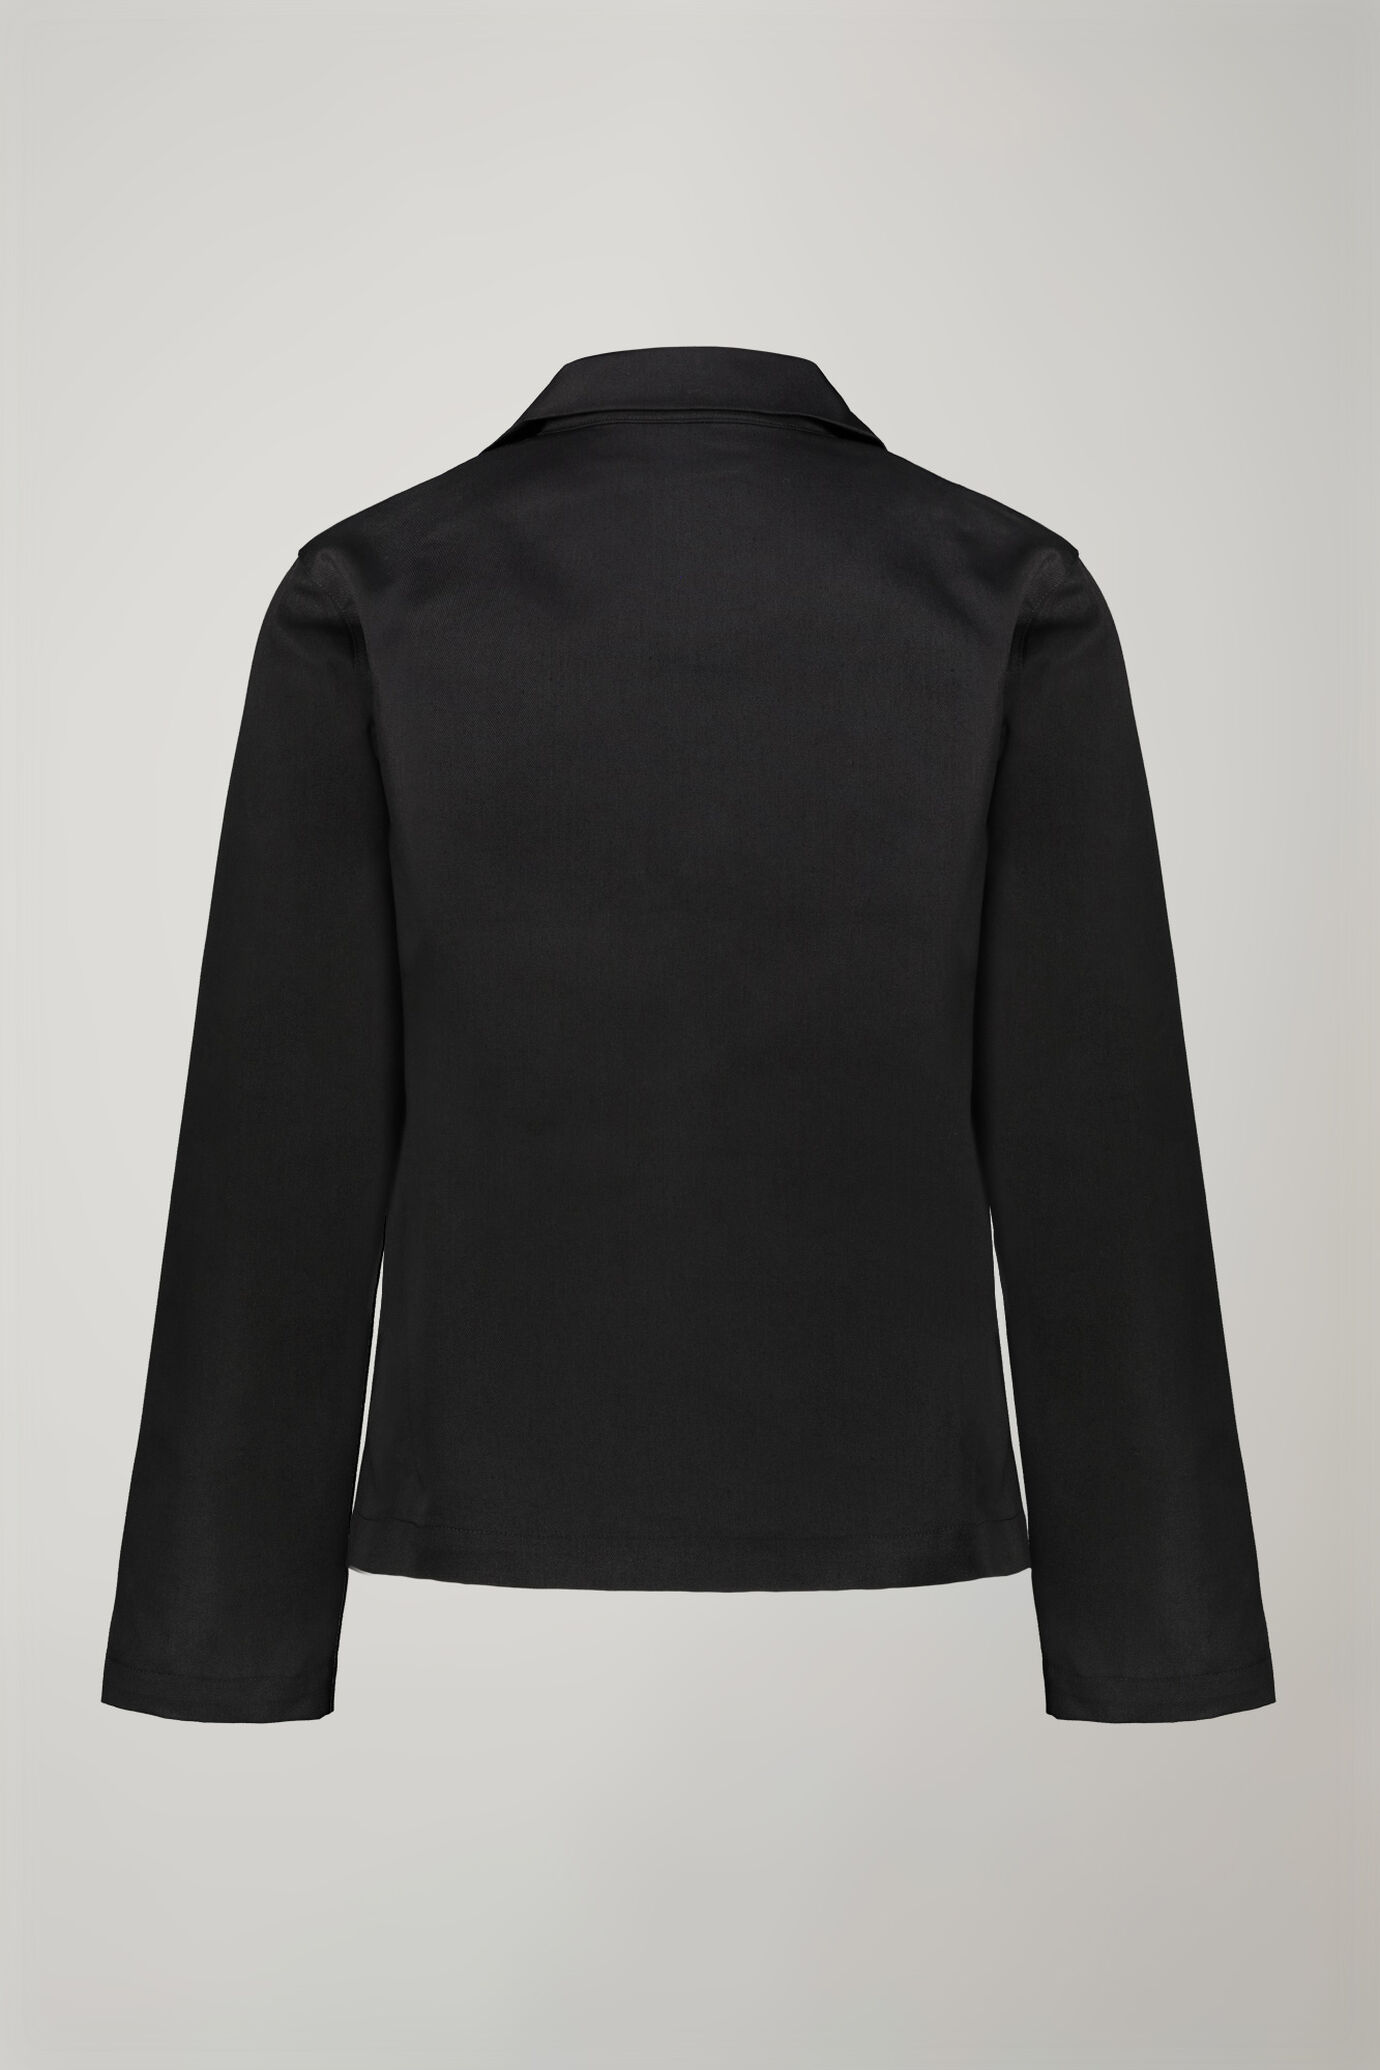 Women's jacket with zip regular fit image number 7